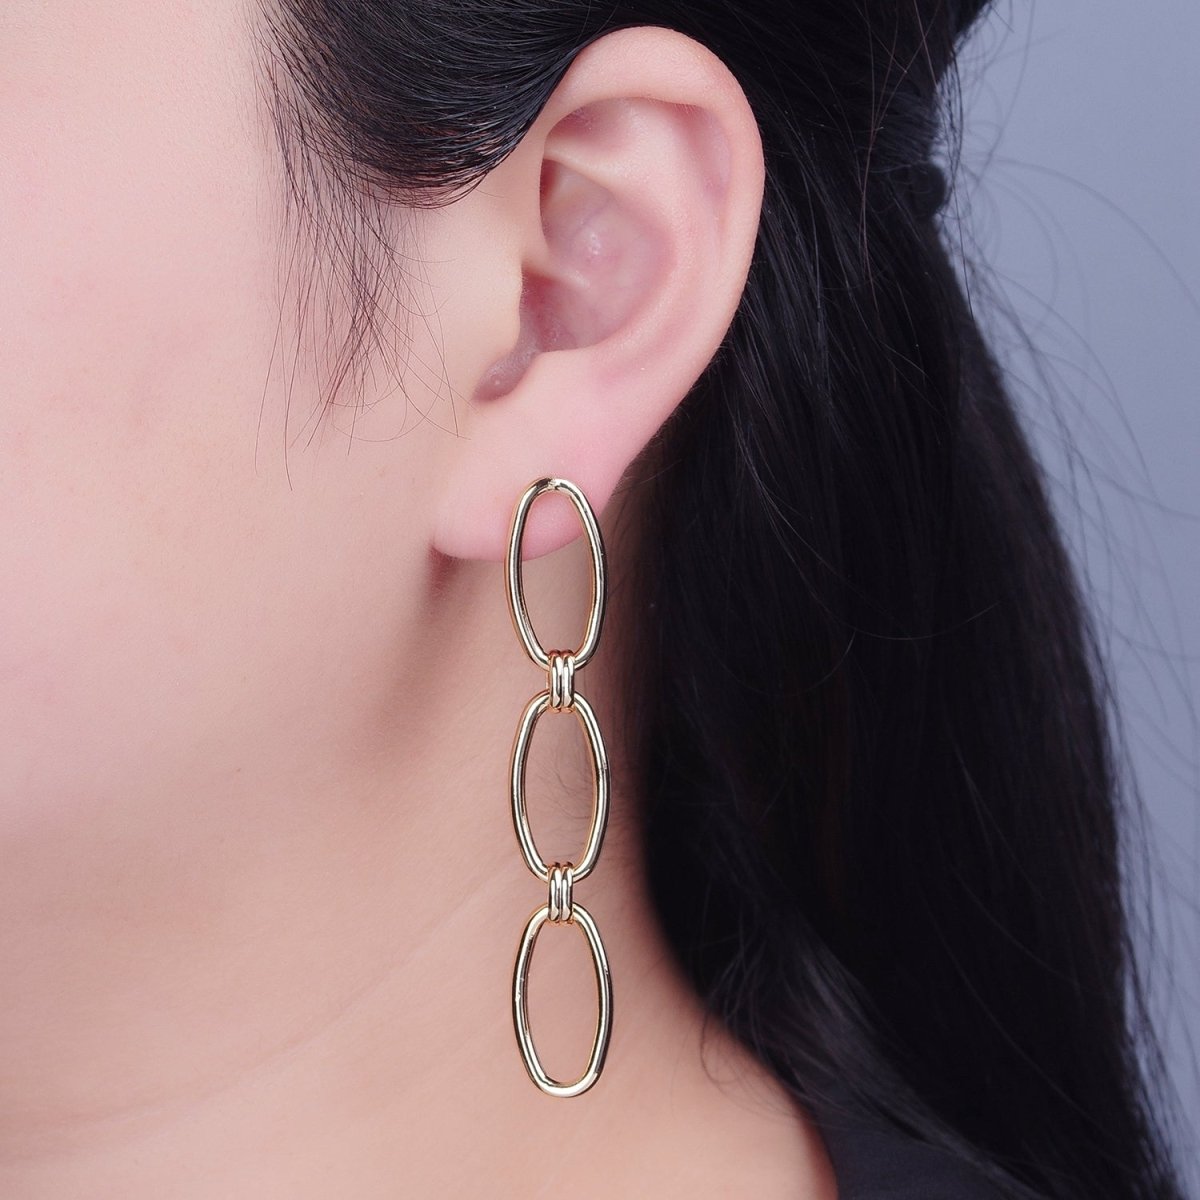 Gold Oval Chain Link Earring Drop Stud Earring T-513 - DLUXCA